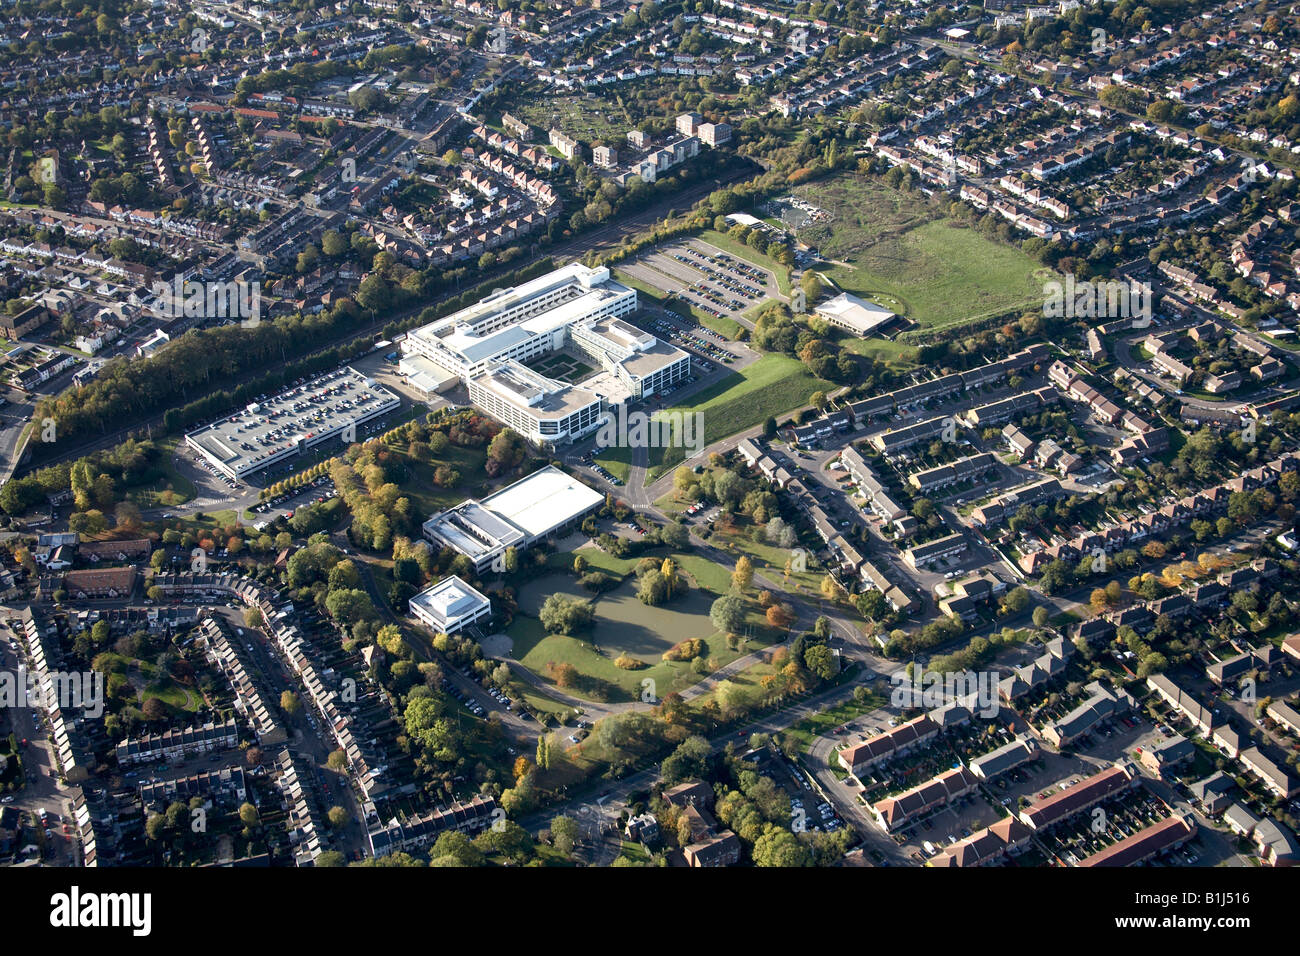 Vue aérienne à l'ouest de banlieue centre d'affaires Terrain de sport et de ligne de chemin de fer Brunswick Park London N11 England UK Banque D'Images